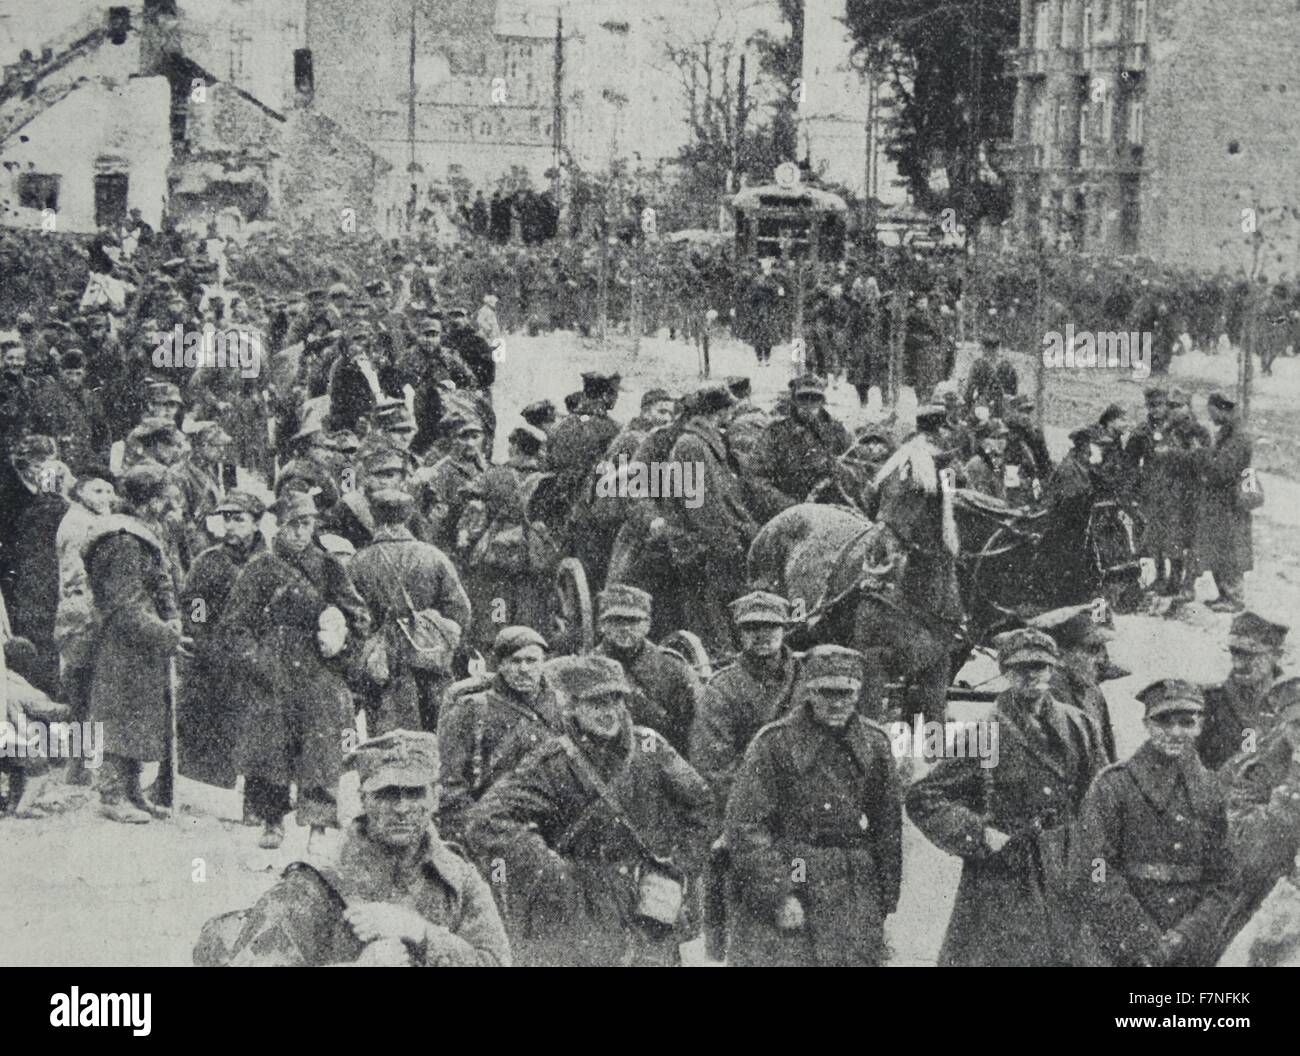 Während die deutschen in die Stadt marschieren waren, wurden Reste der Warschauer Garnison, einige hier gezeigten nach der Kapitulation als Kriegsgefangene unter deutsche Garde noch heraus marschieren. Stockfoto